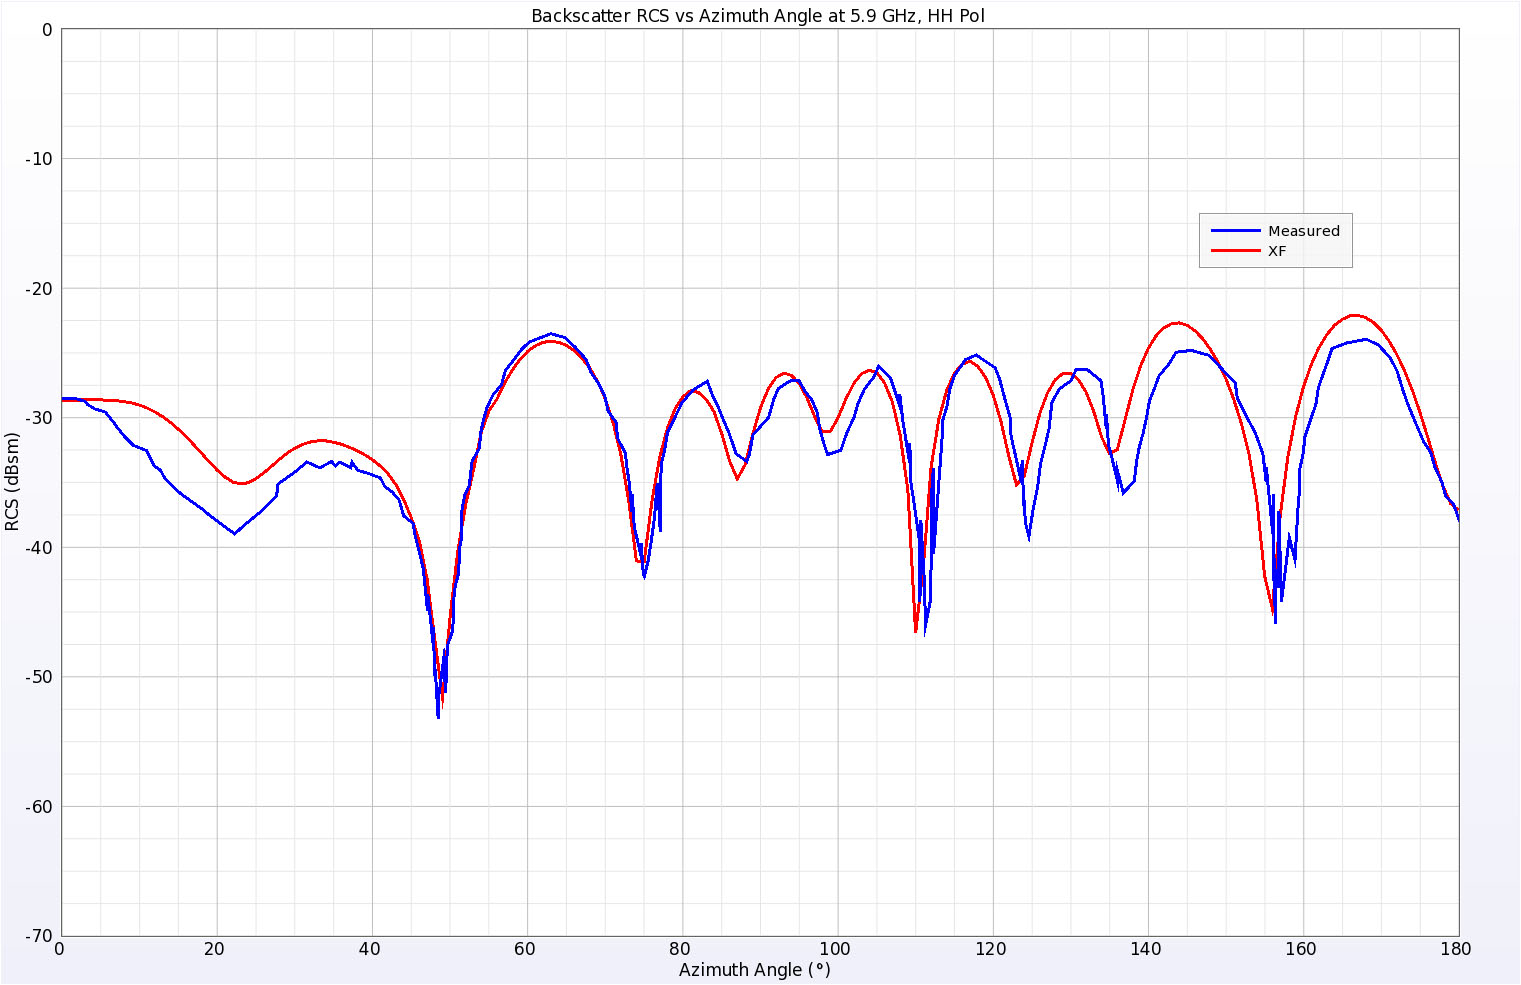 图 13 5.9 GHz 频率下楔形板圆柱体的后向散射 RCS 模拟和测量结果，水平极化。